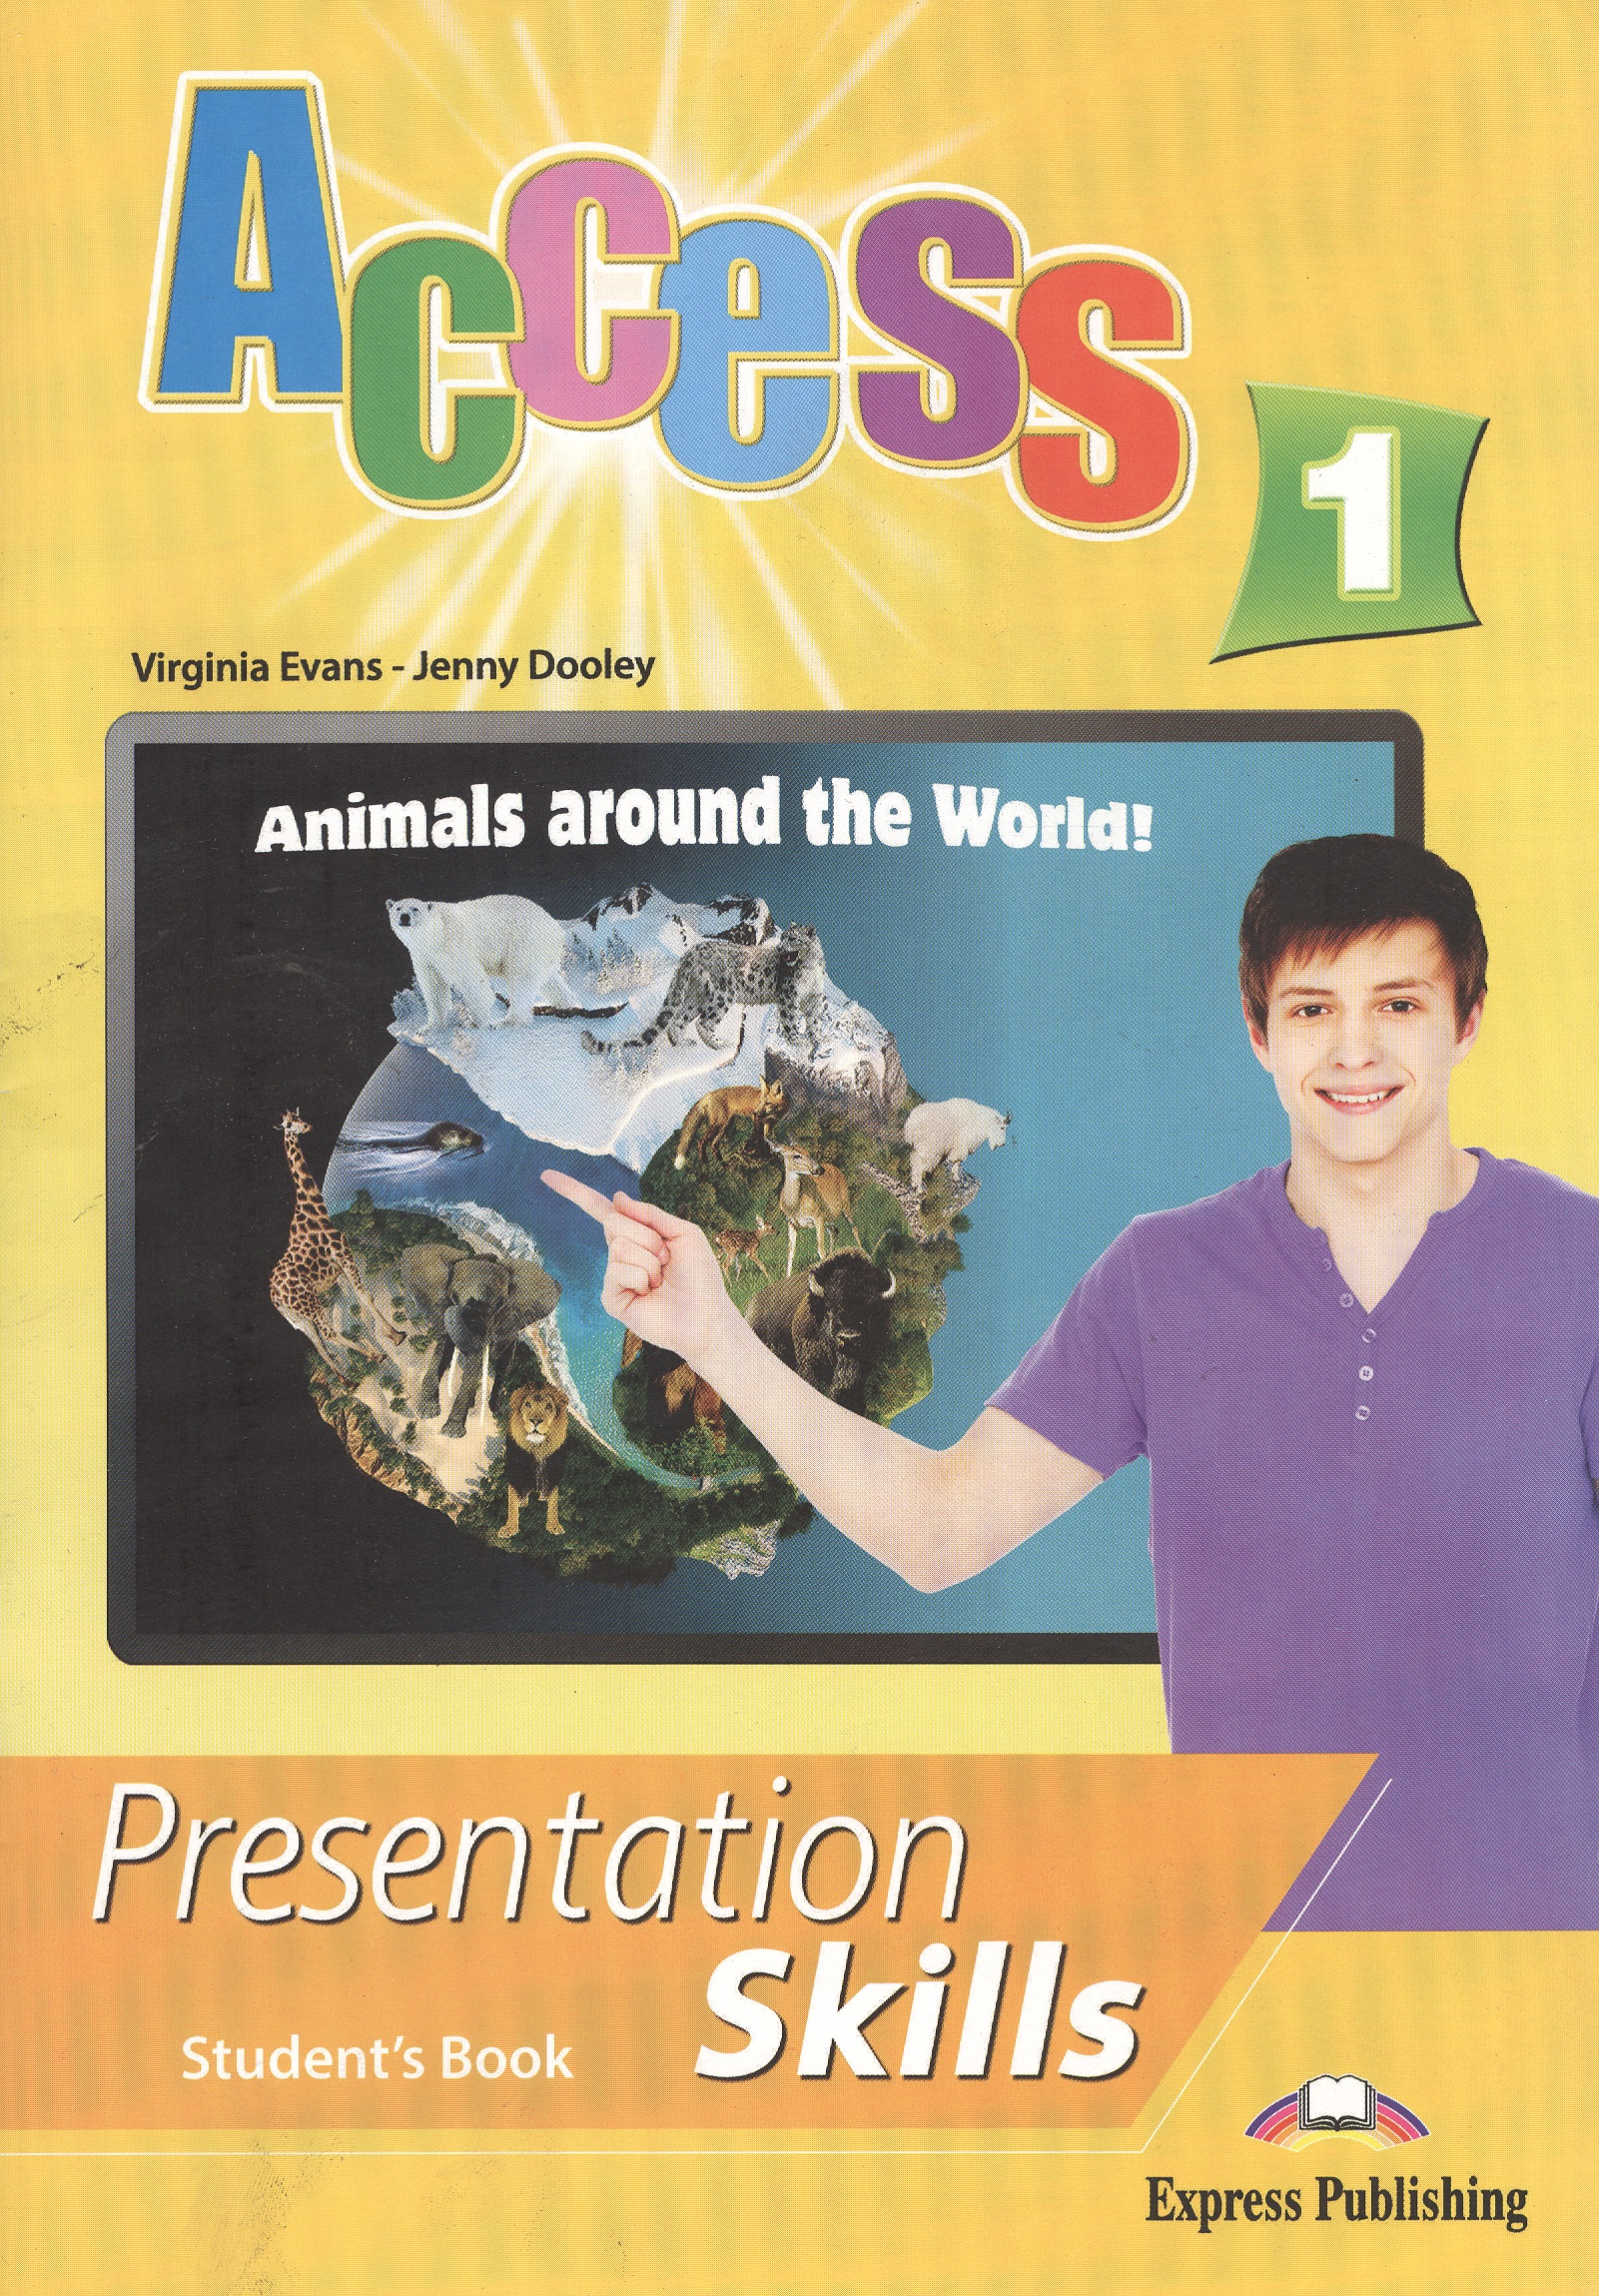 эванс вирджиния access 2 presentation skills student s book Эванс Вирджиния Access 1. Presentation Skills. Student's Book